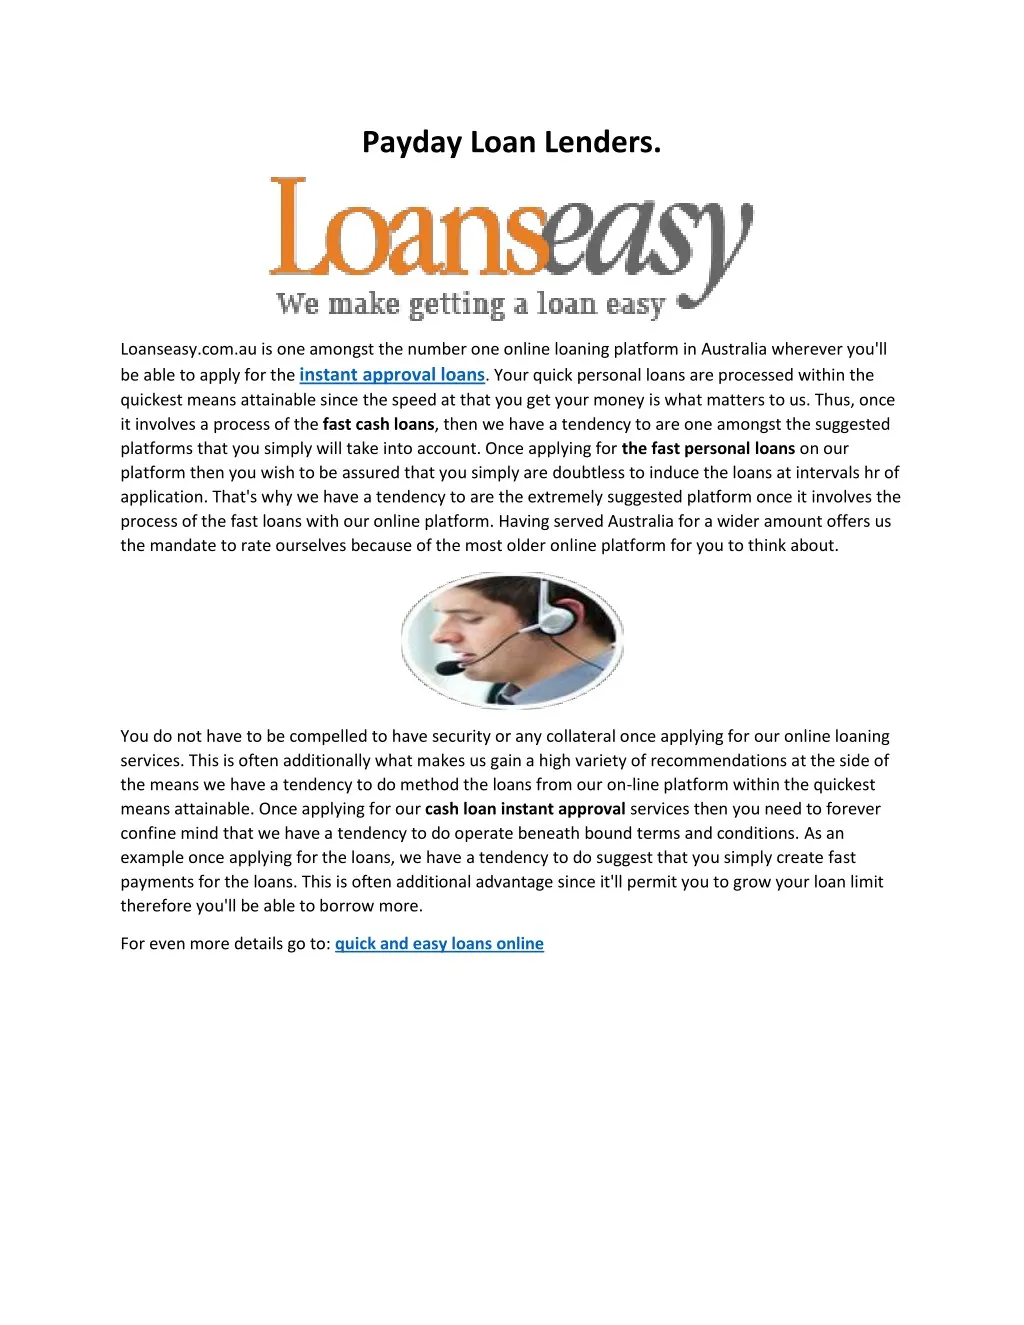 payday loan lenders